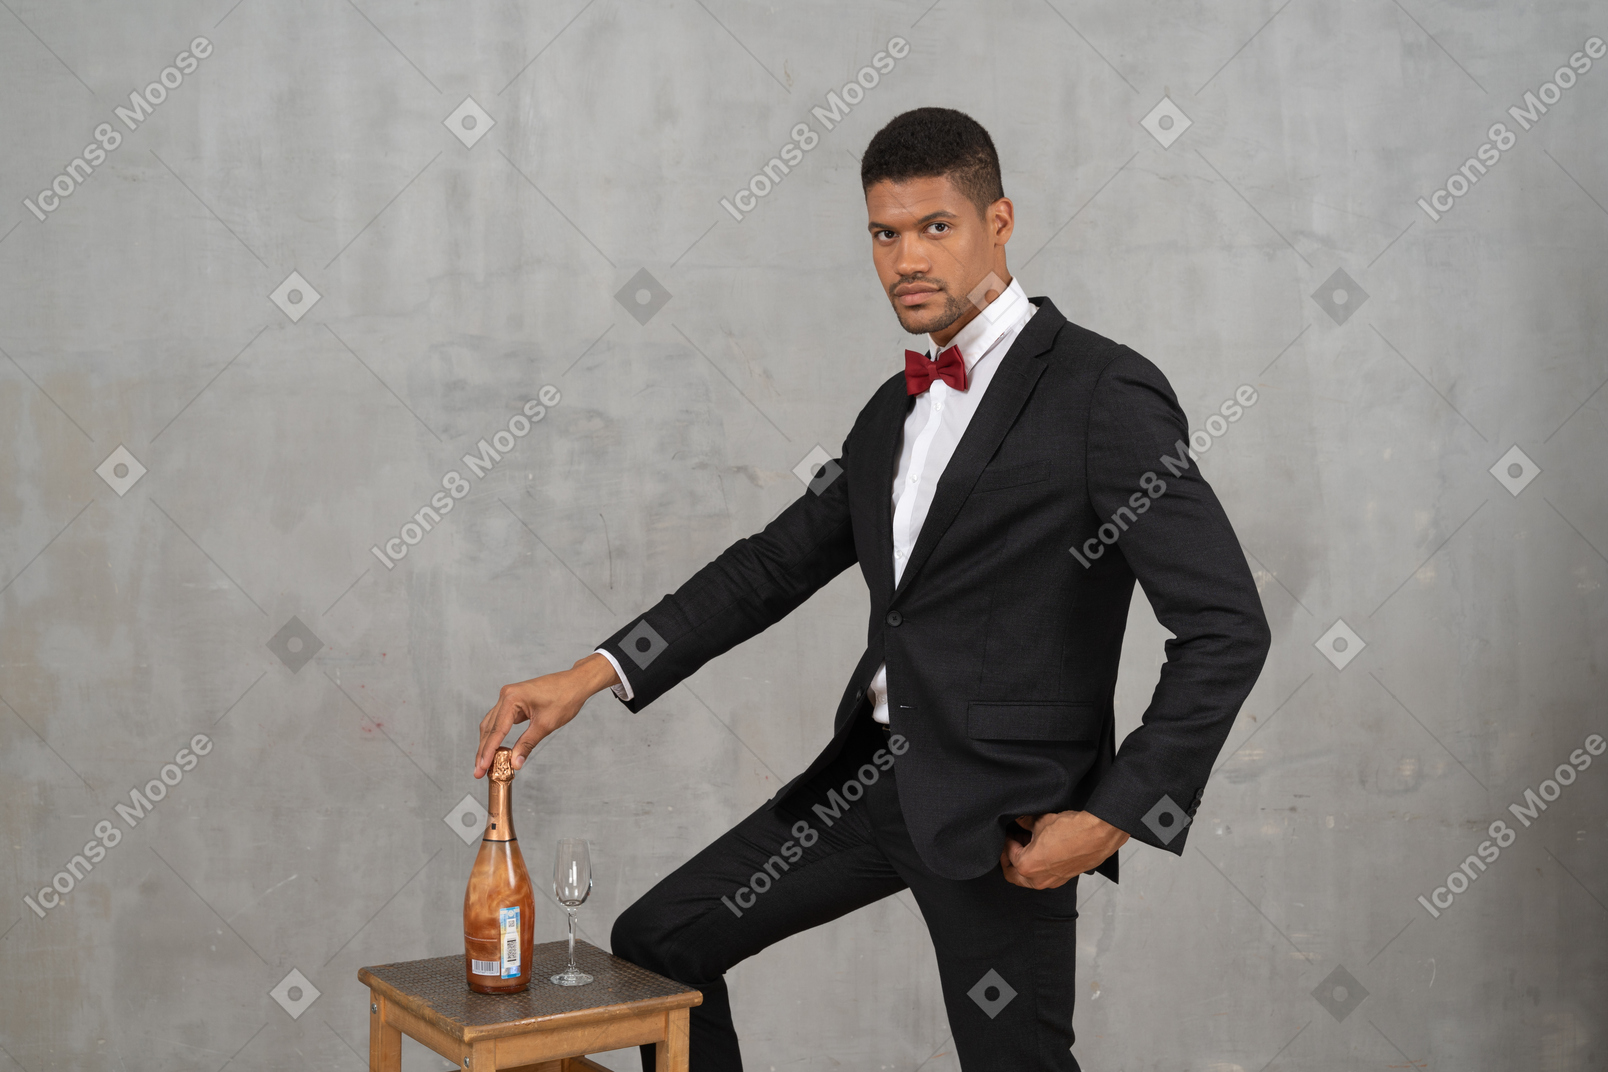 シャンパン ボトルの上に手を置いて立っている男性